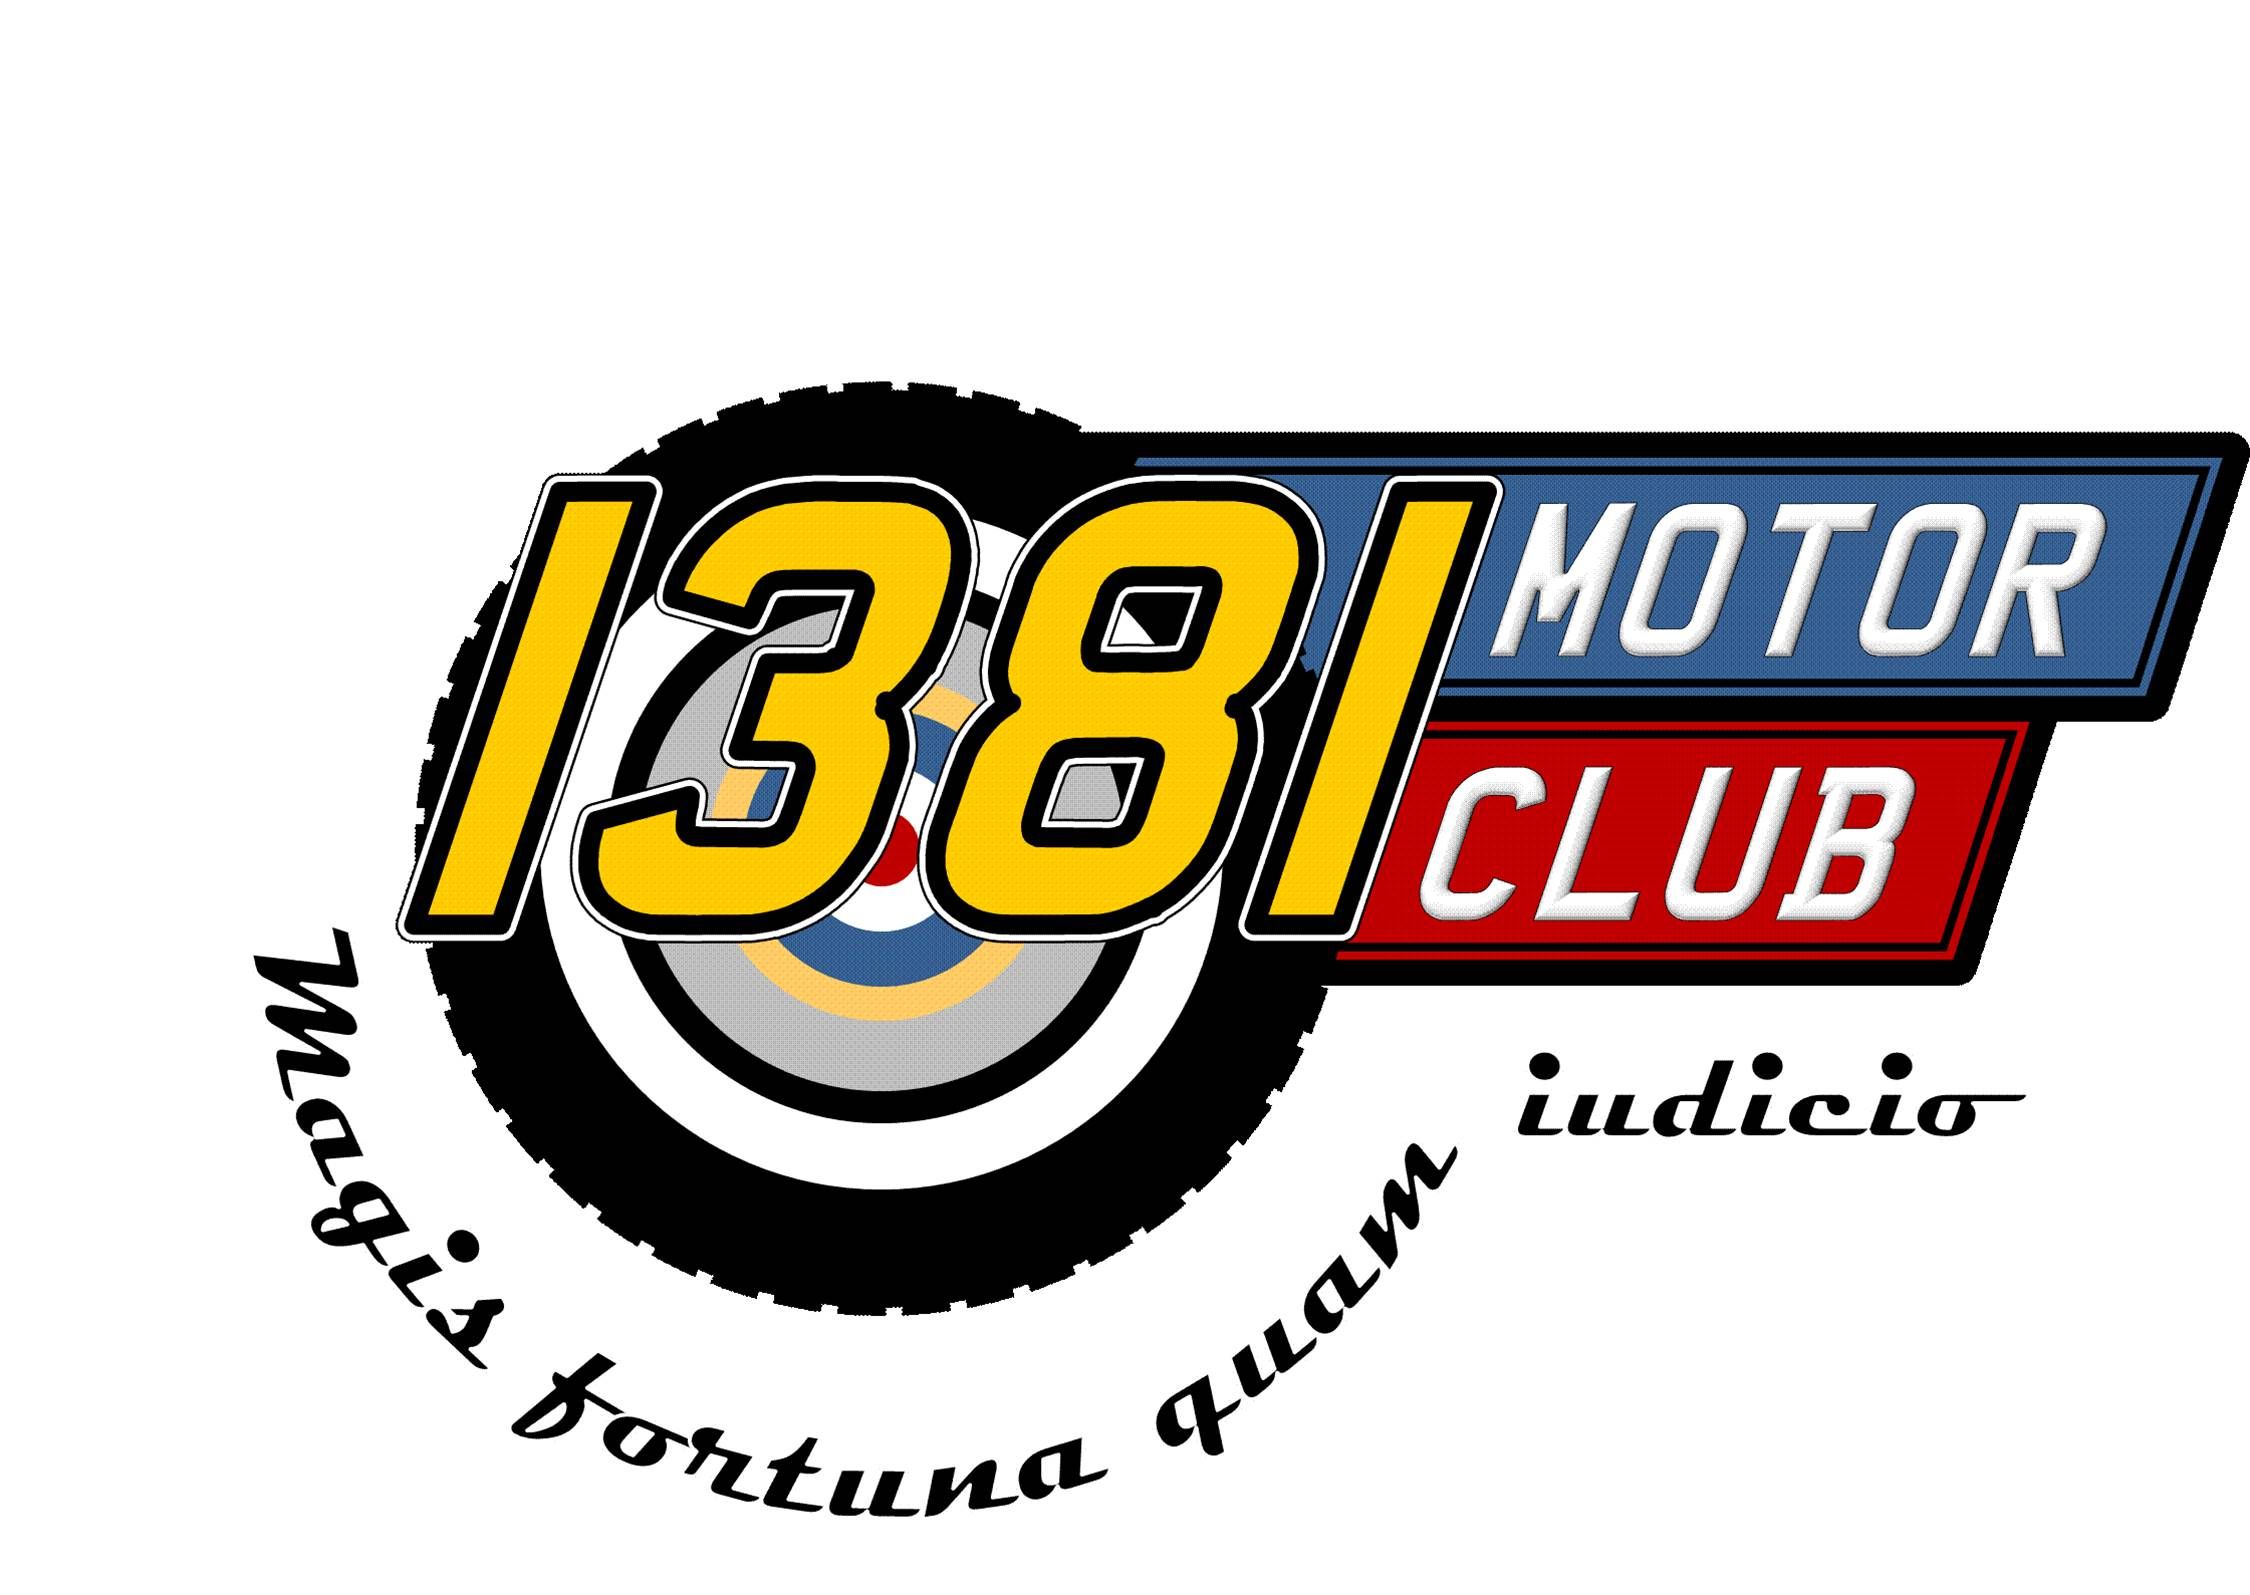 1381 Motor Club